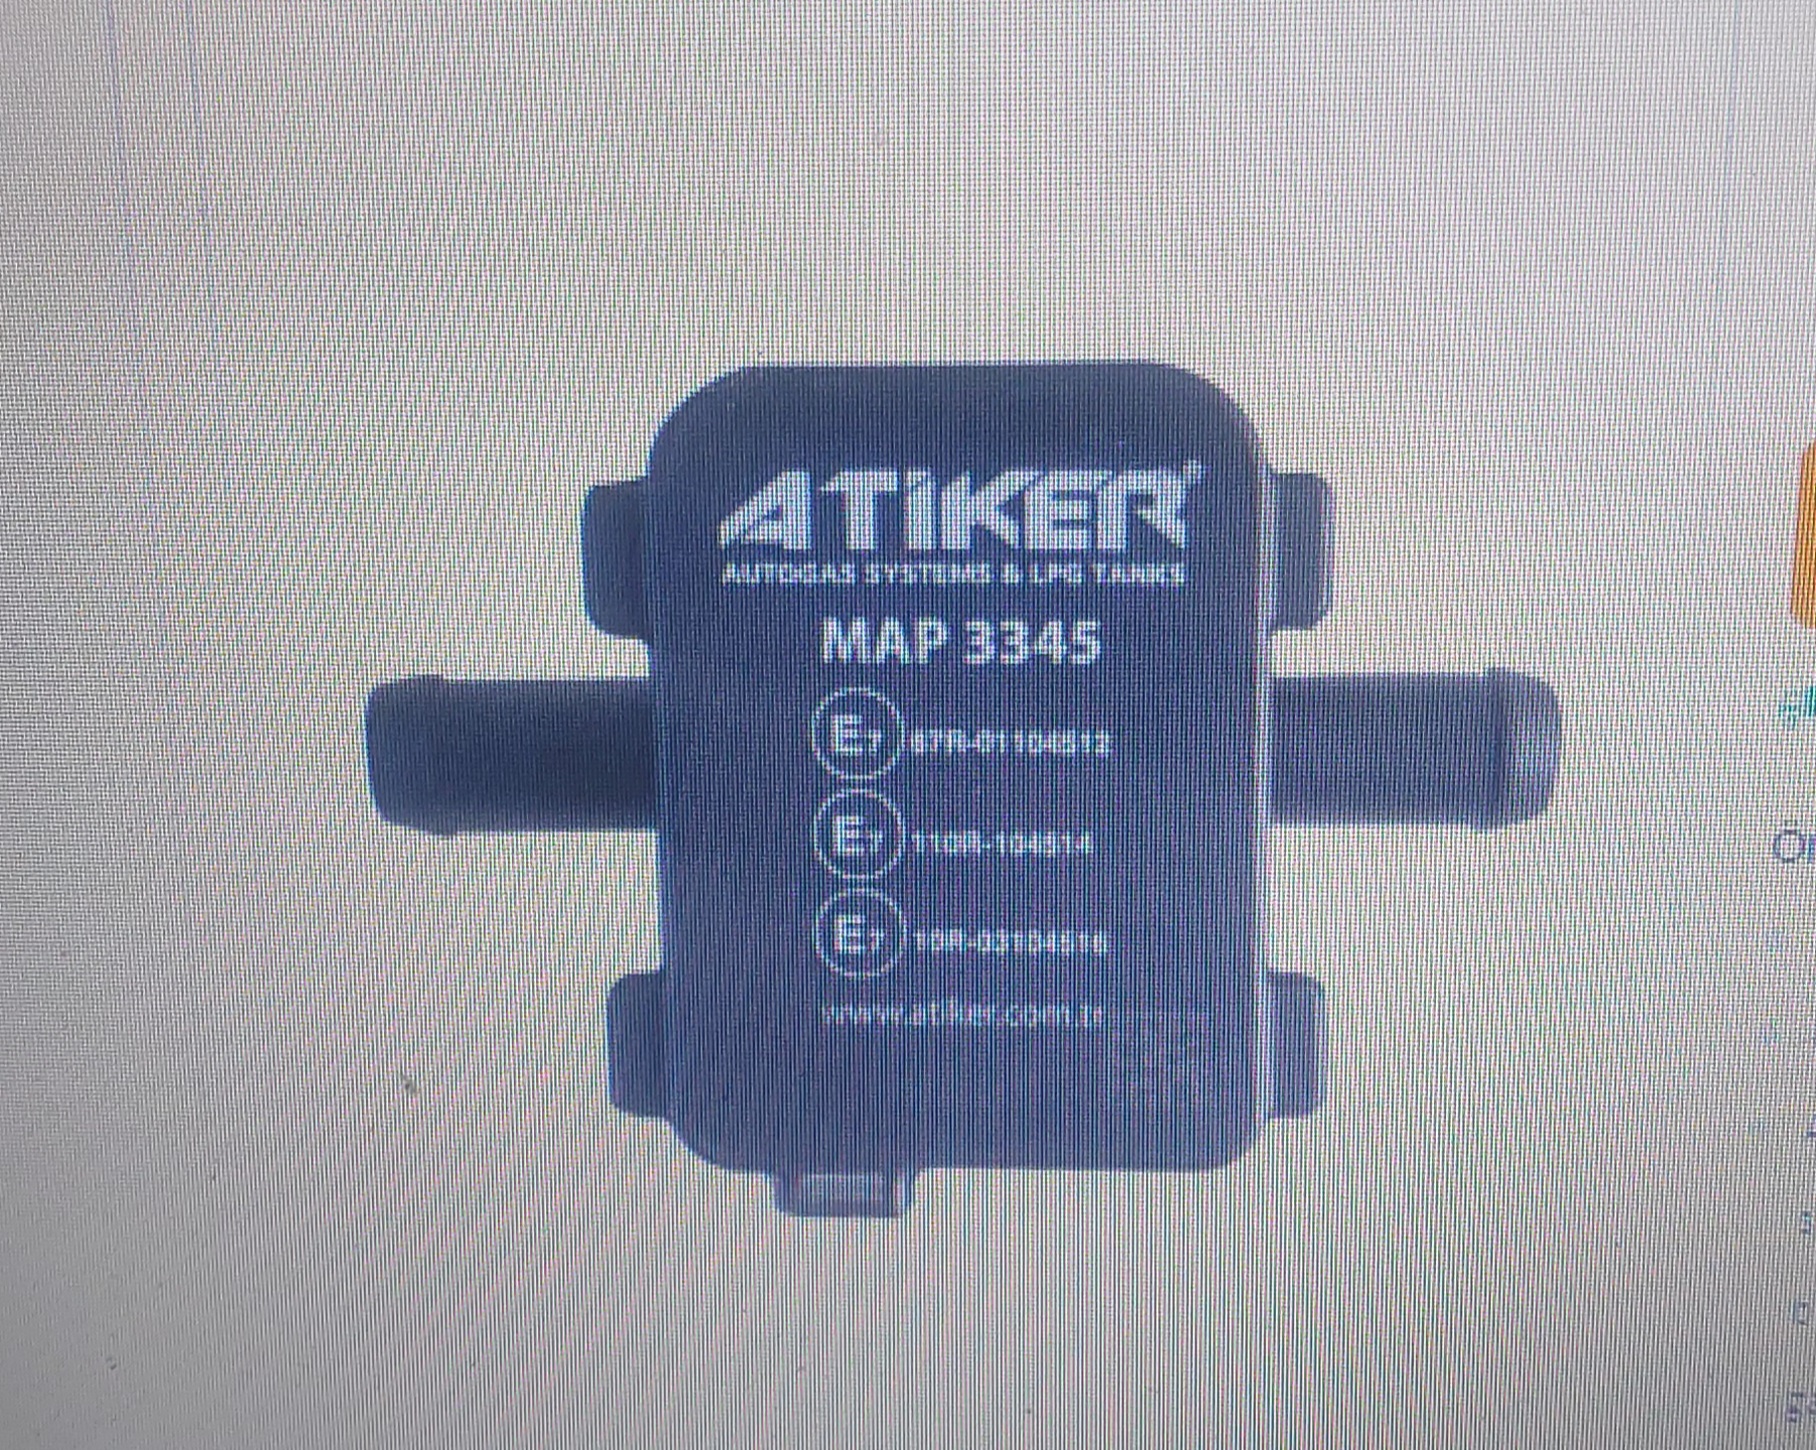 Atiker Nanofast Lpg map Sensörü 3345